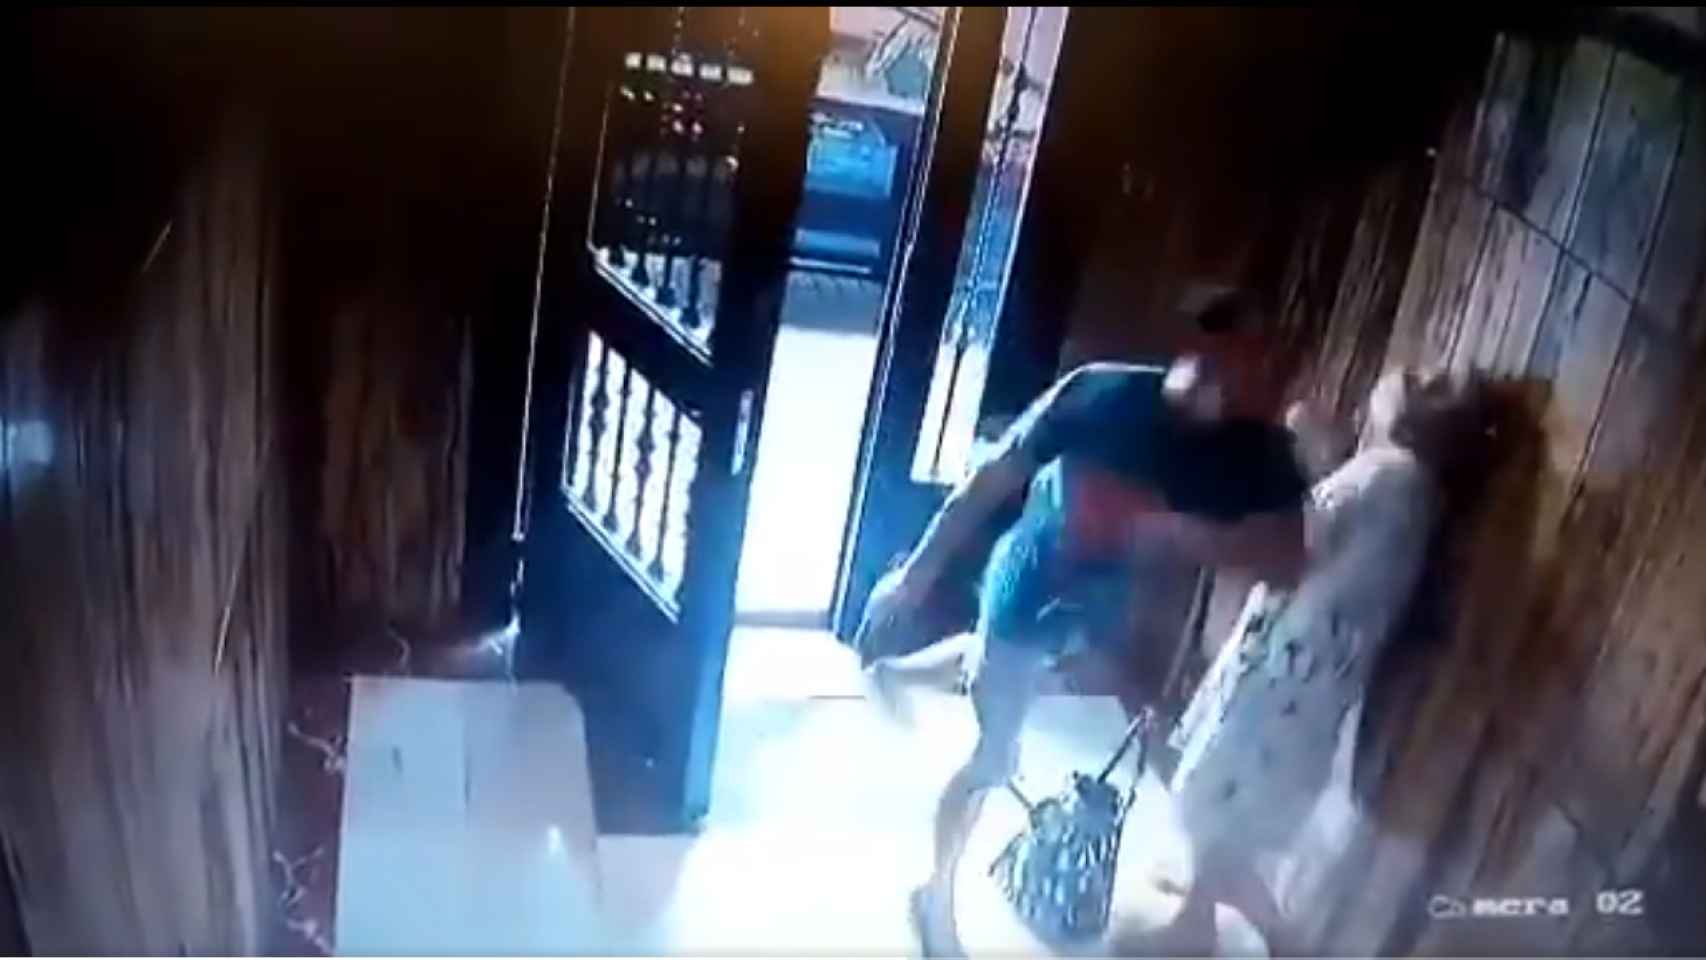 Imagen tomada por la cámara de seguridad del puñetazo propinado a la anciana para robarla